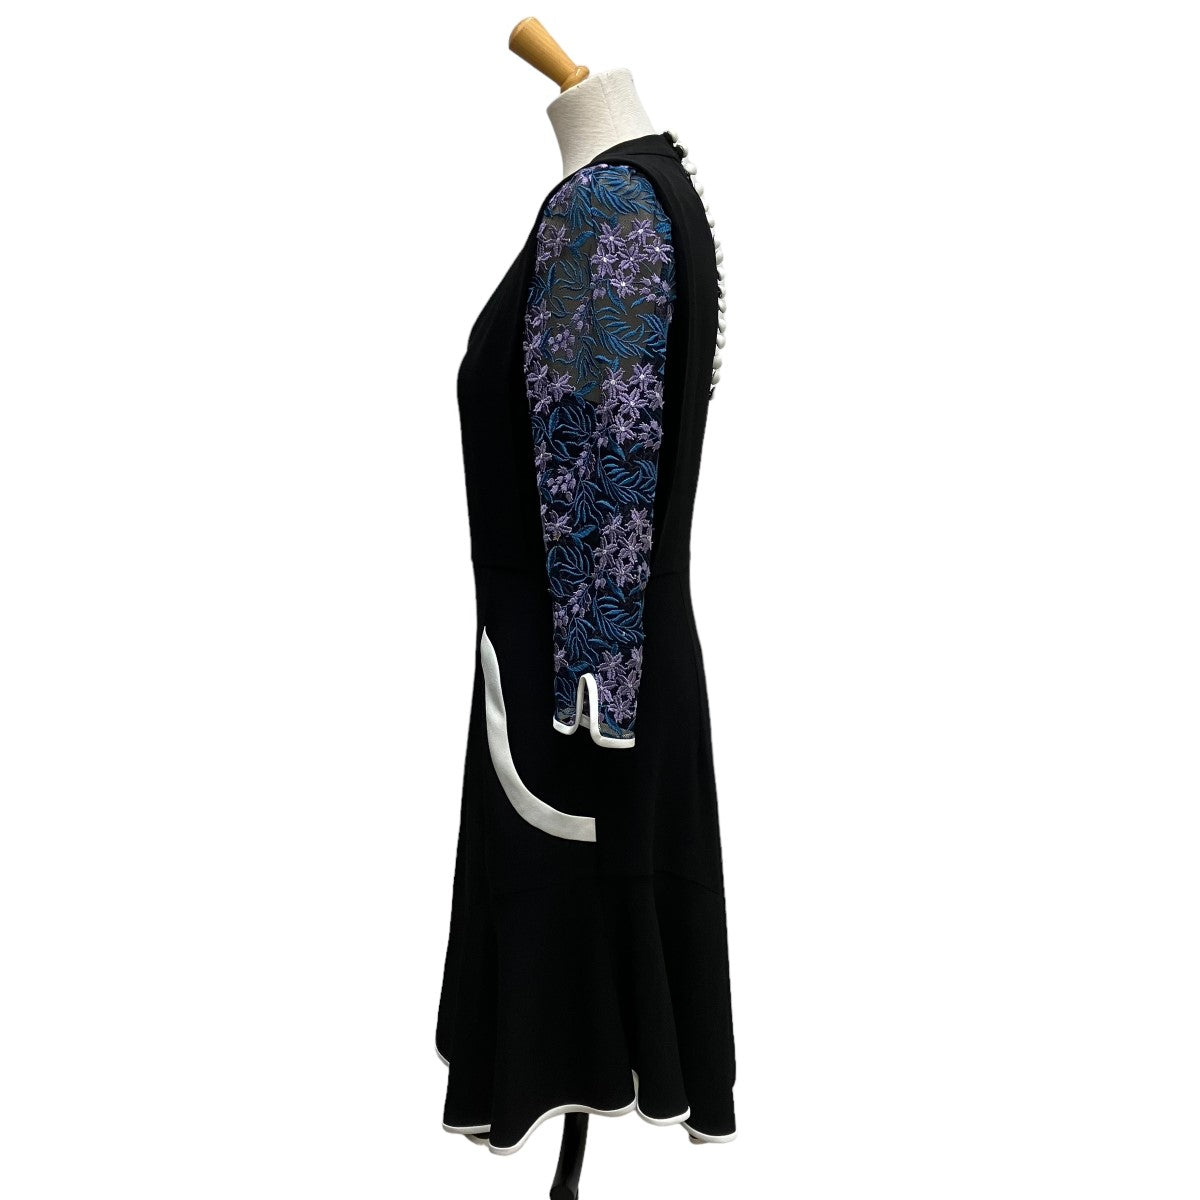 マメクロゴウチ Tulle Embroidered Sleeve Dress質屋古物市場ストア商品